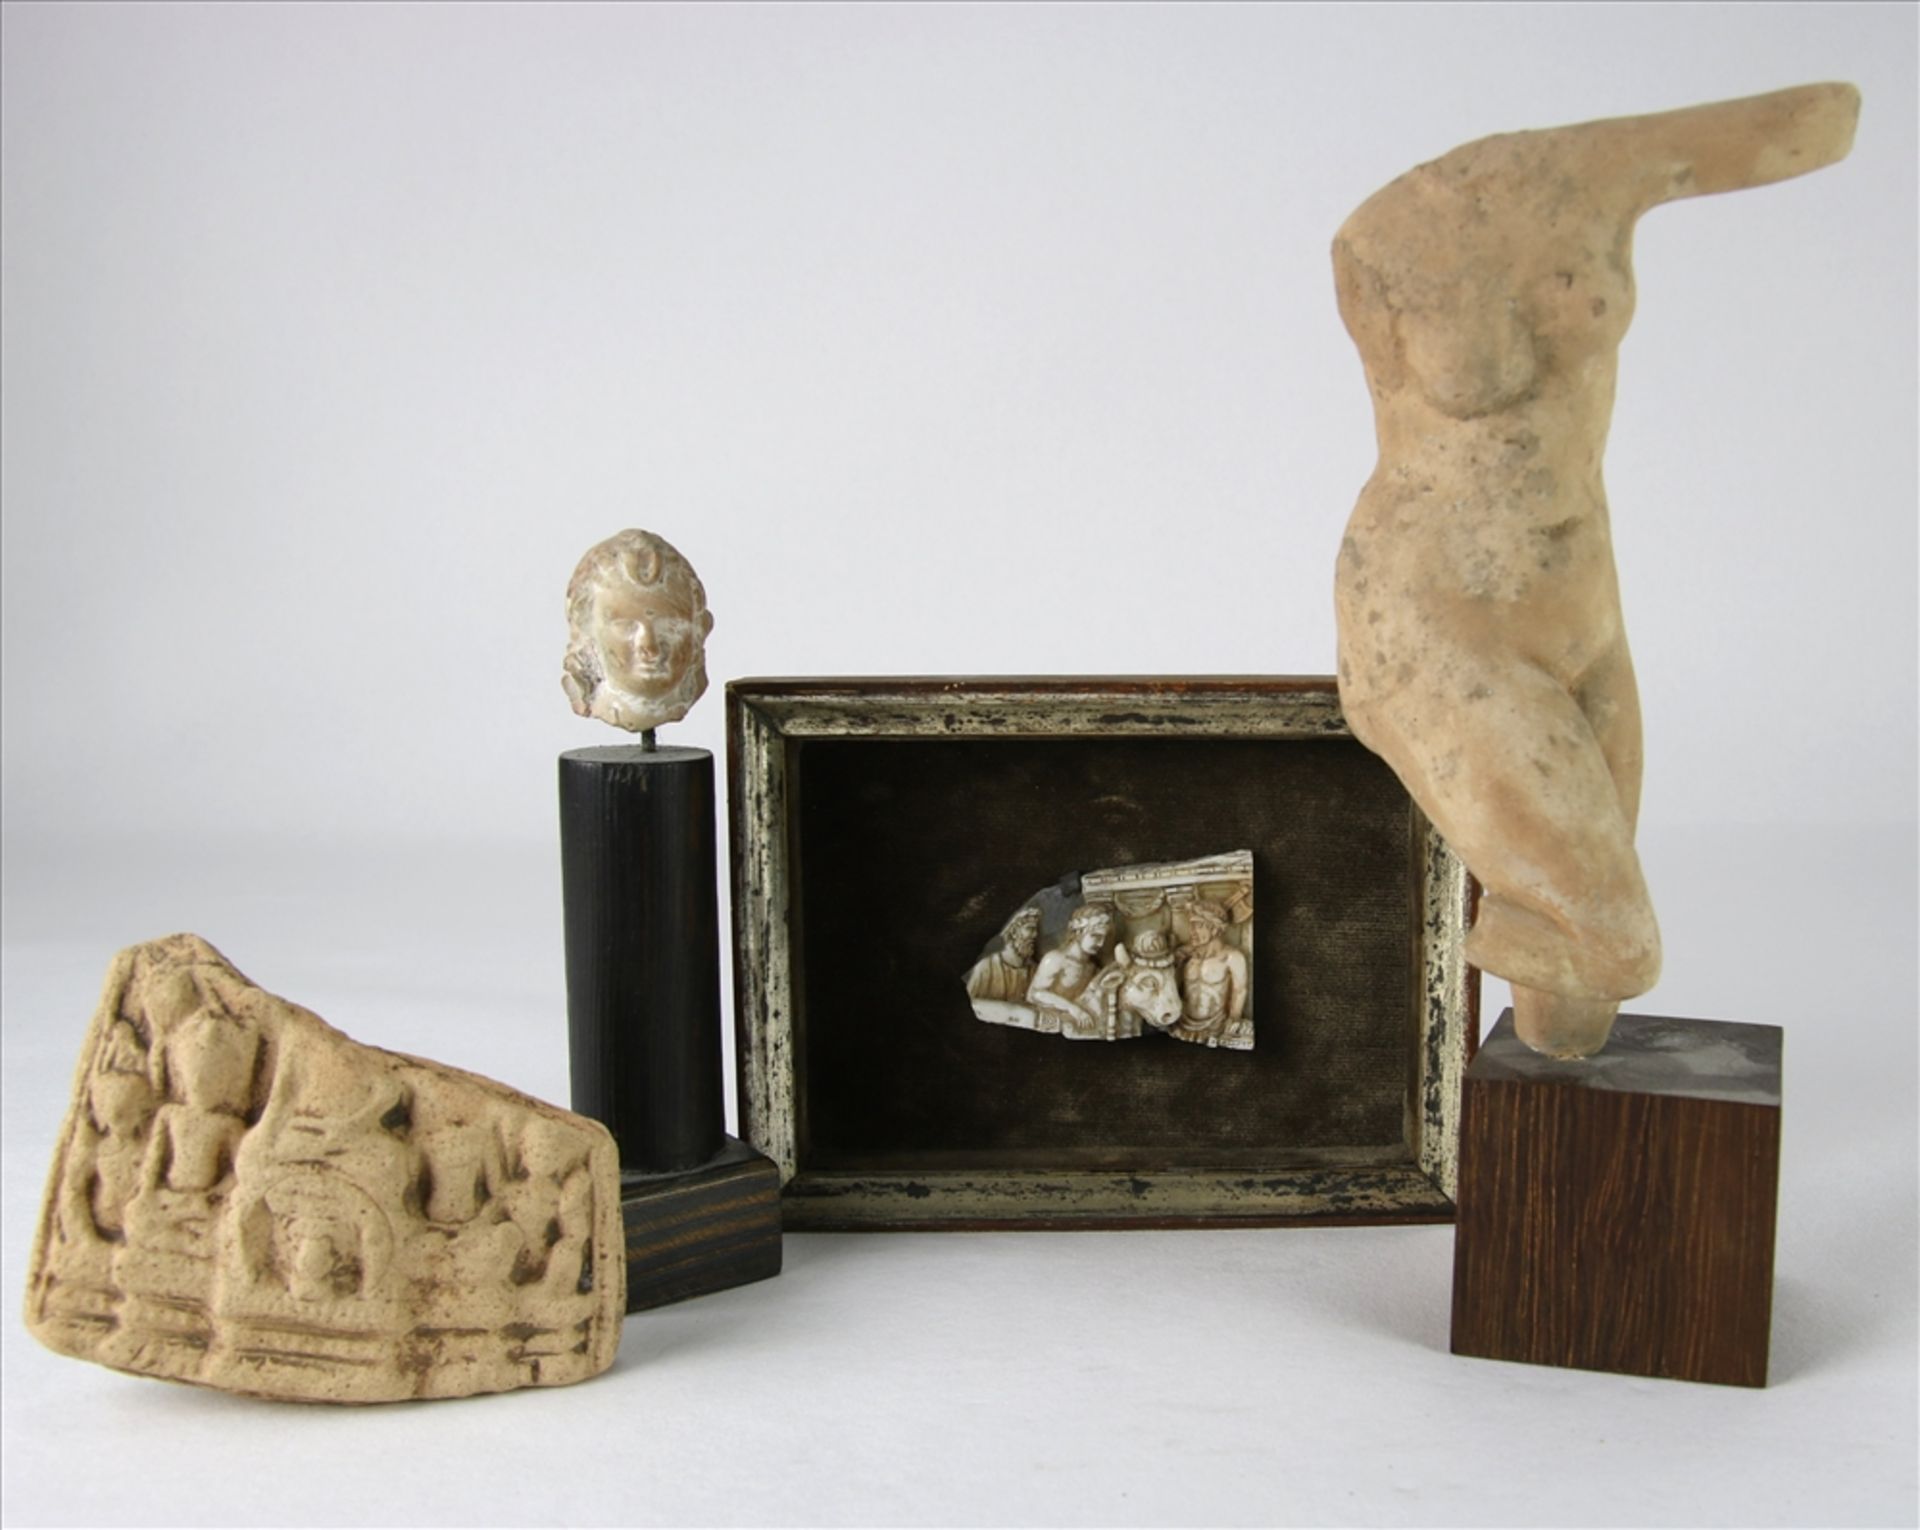 Konvolut Antike Hauptsächlich Mittelmeerraum. Venus und ein Terracotta Kopf sowie ein buddhistisches